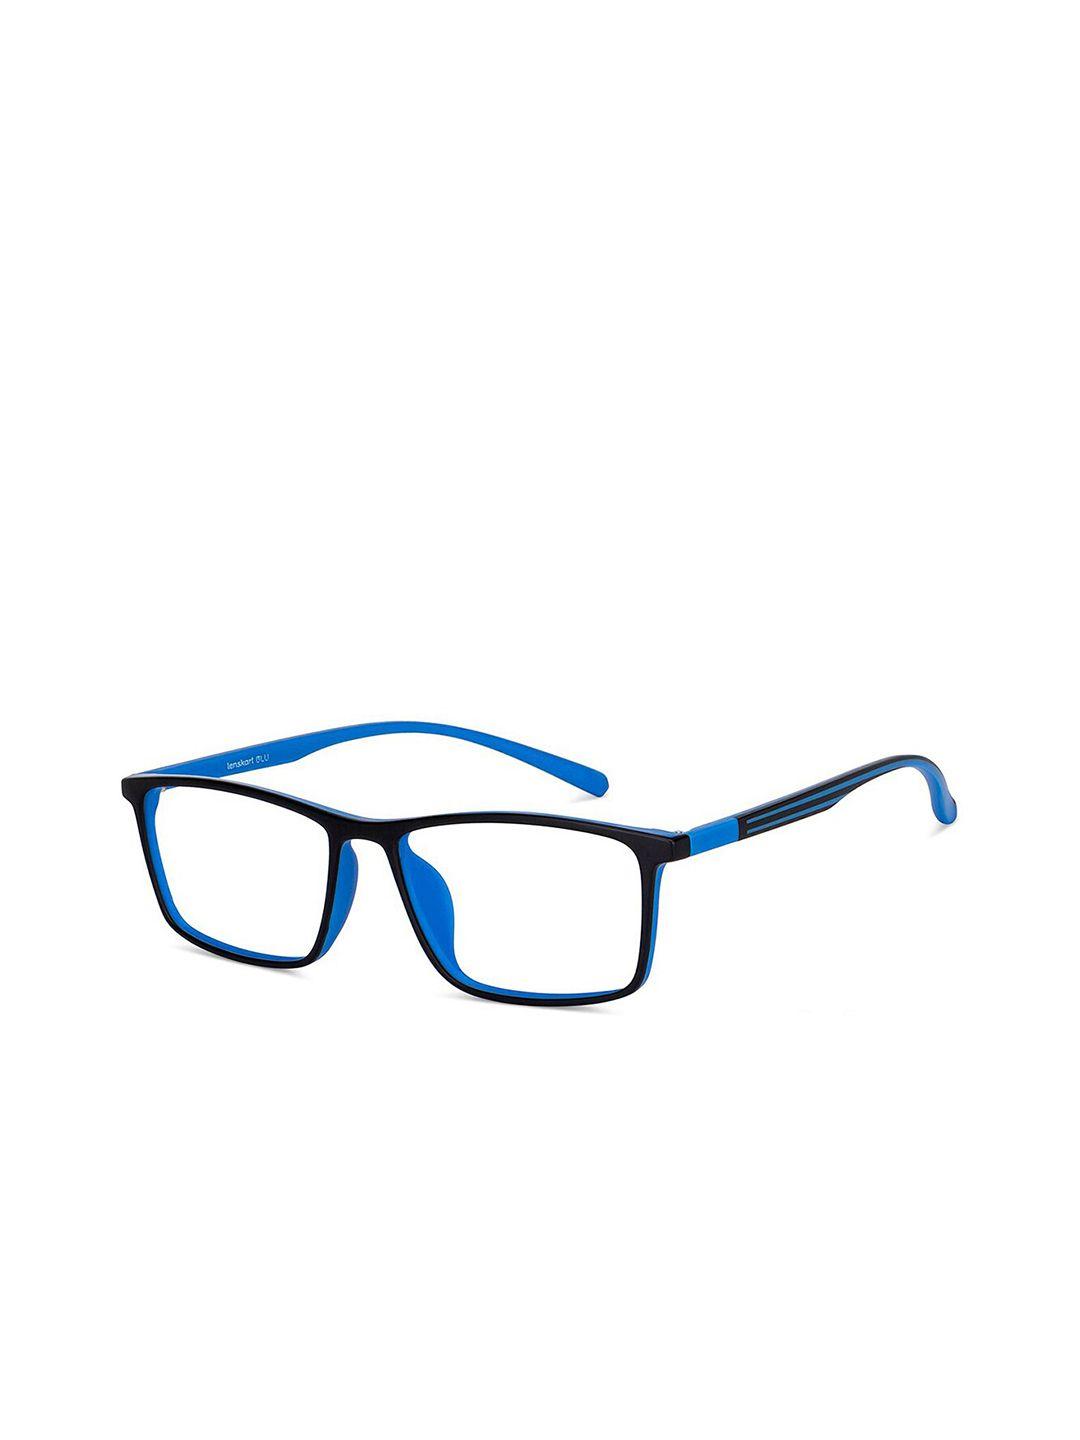 lenskart blu unisex transparent & blue full rim rectangle frames